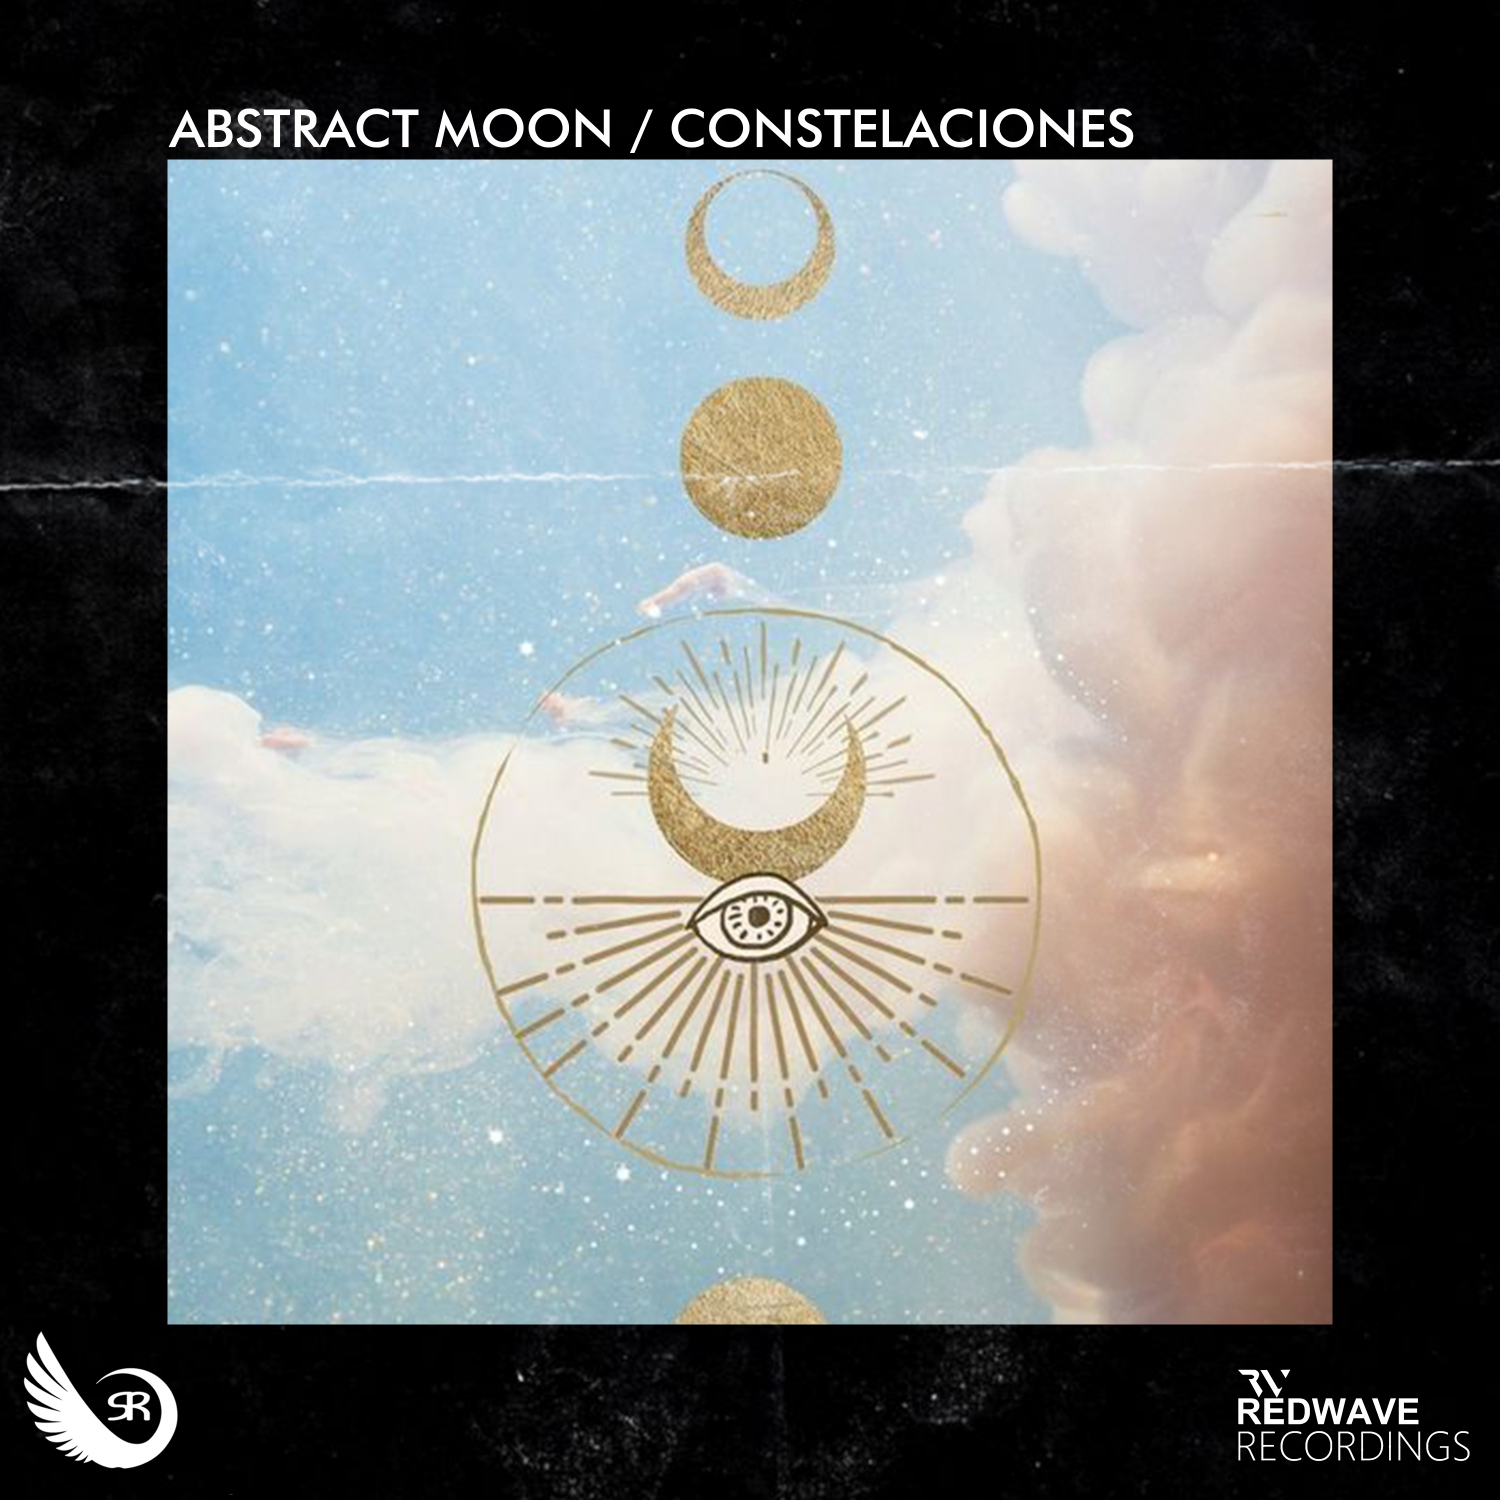 Abstract Moon presents Constelaciones on Sahara Recordings